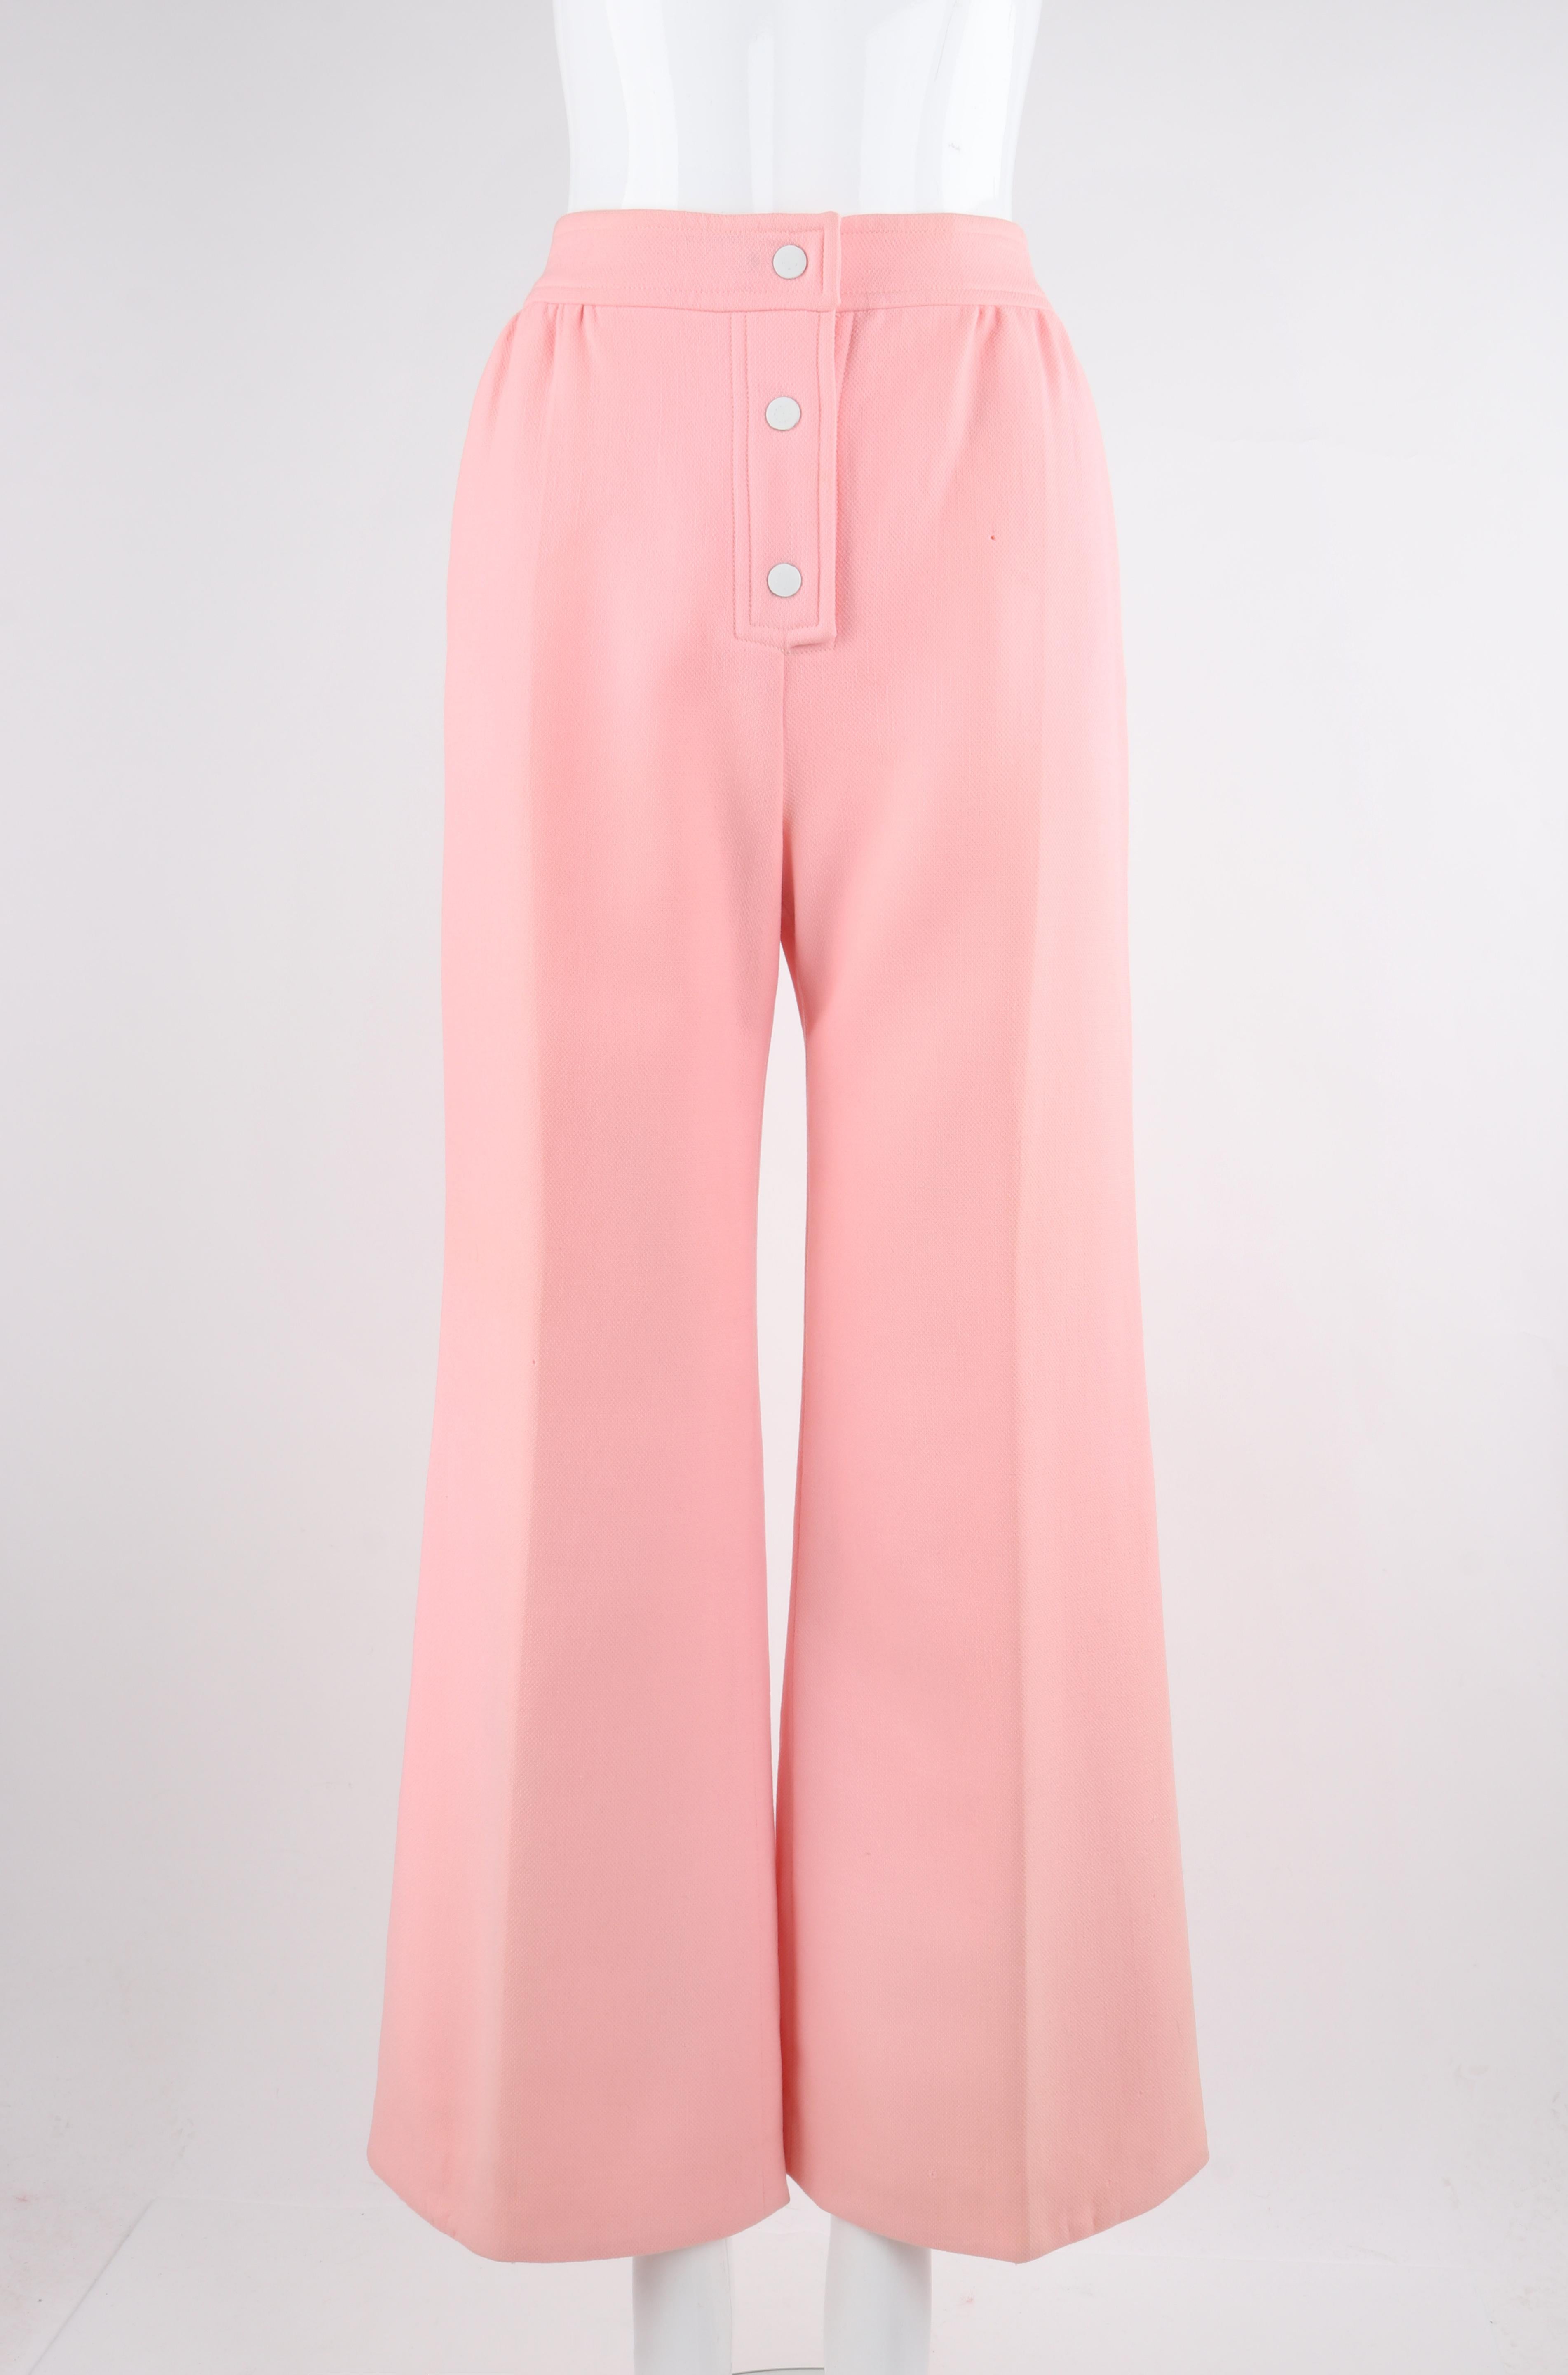 COURREGES Hyperbole c.1970's Vtg Pantalon pantalon large en laine rose à taille haute

Marque / Fabricant : Courreges
Circa : 1970's
Designer : Andre Courreges
Style : Pantalon à jambes larges
Couleur(s) : Rose (tissu), Blanc